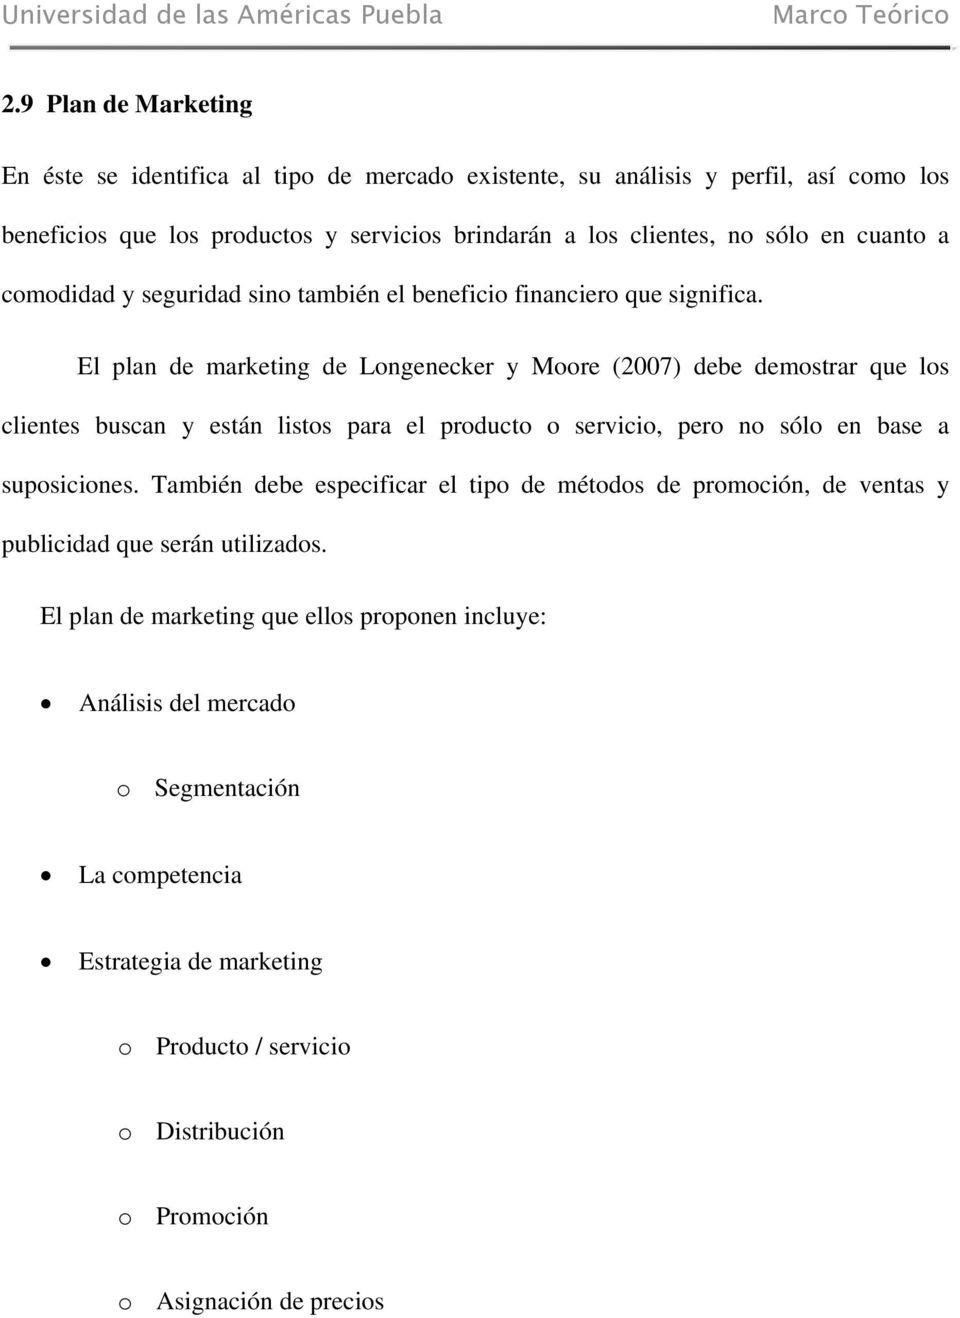 El plan de marketing de Longenecker y Moore (2007) debe demostrar que los clientes buscan y están listos para el producto o servicio, pero no sólo en base a suposiciones.